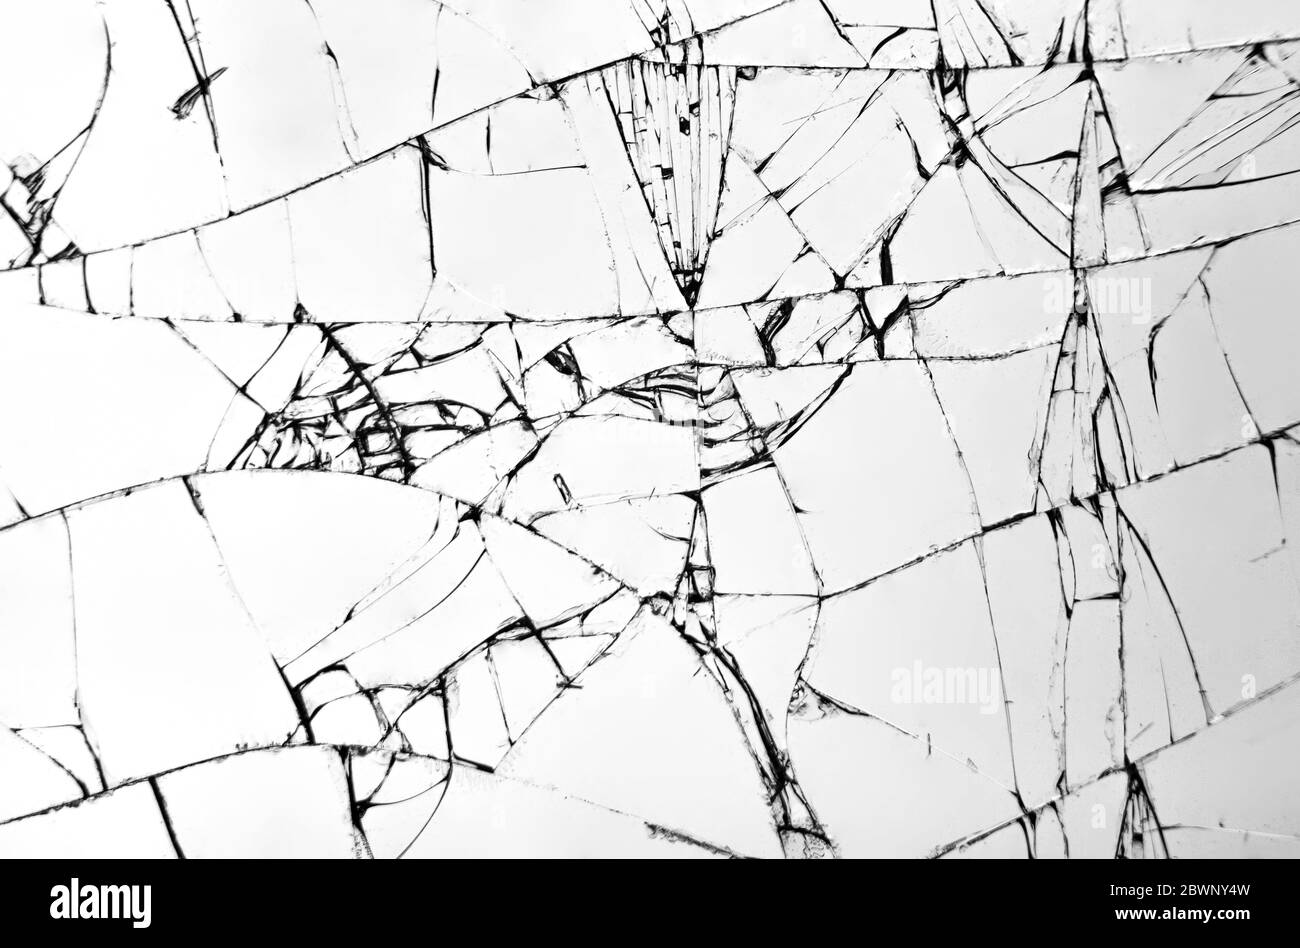 Texture de verre brisé, fissures sur le verre avec fond blanc, concept de fissures pour la conception. Banque D'Images